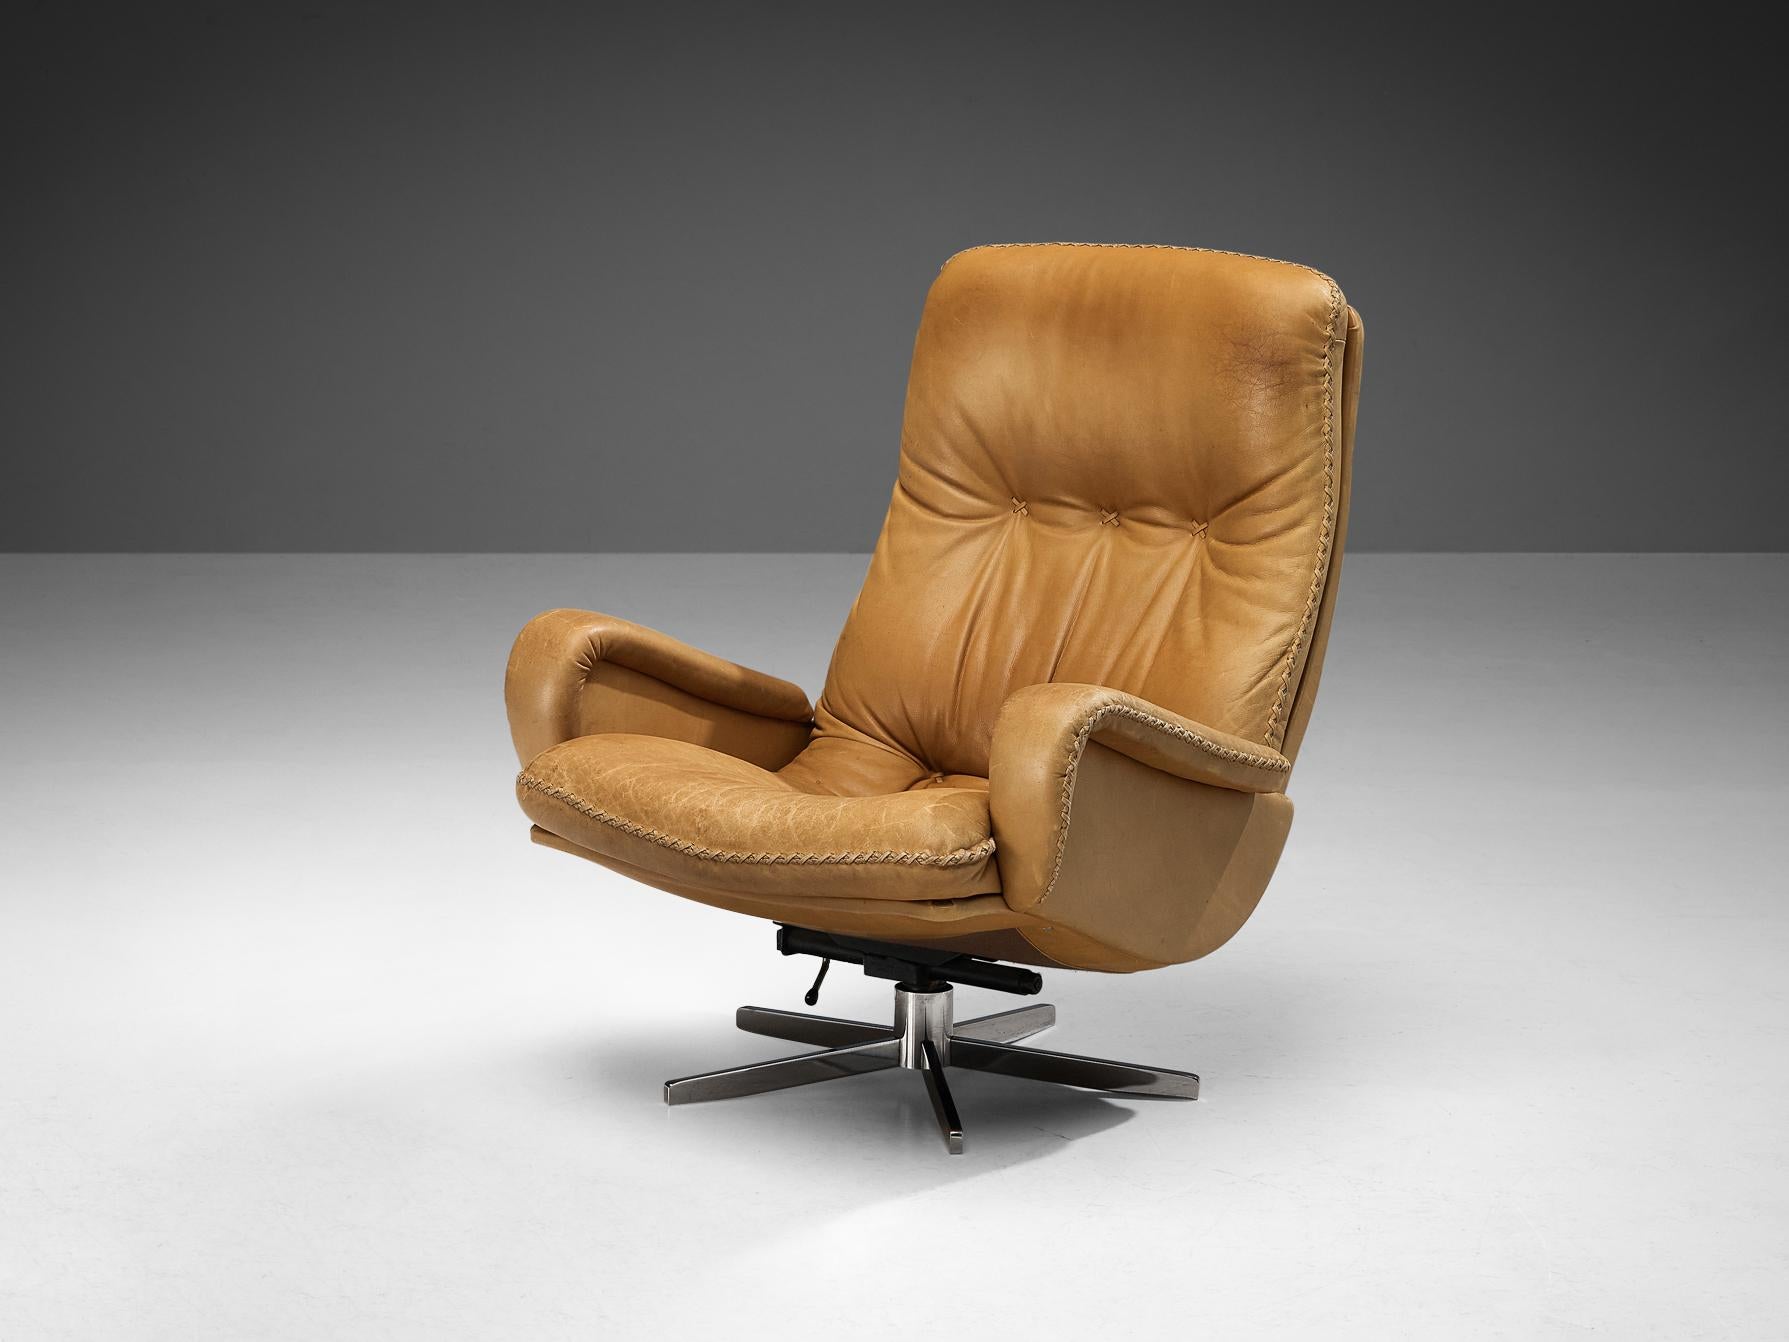 De Sede Loungesessel, Modell 'S231', patiniertes Leder, verchromtes Metall, Schweiz, 1960er Jahre

Dieser schöne und stilvolle Stuhl basiert auf einer soliden Konstruktion mit einer großen Rückenlehne und einer tiefen Sitzfläche, die dem Sitzenden